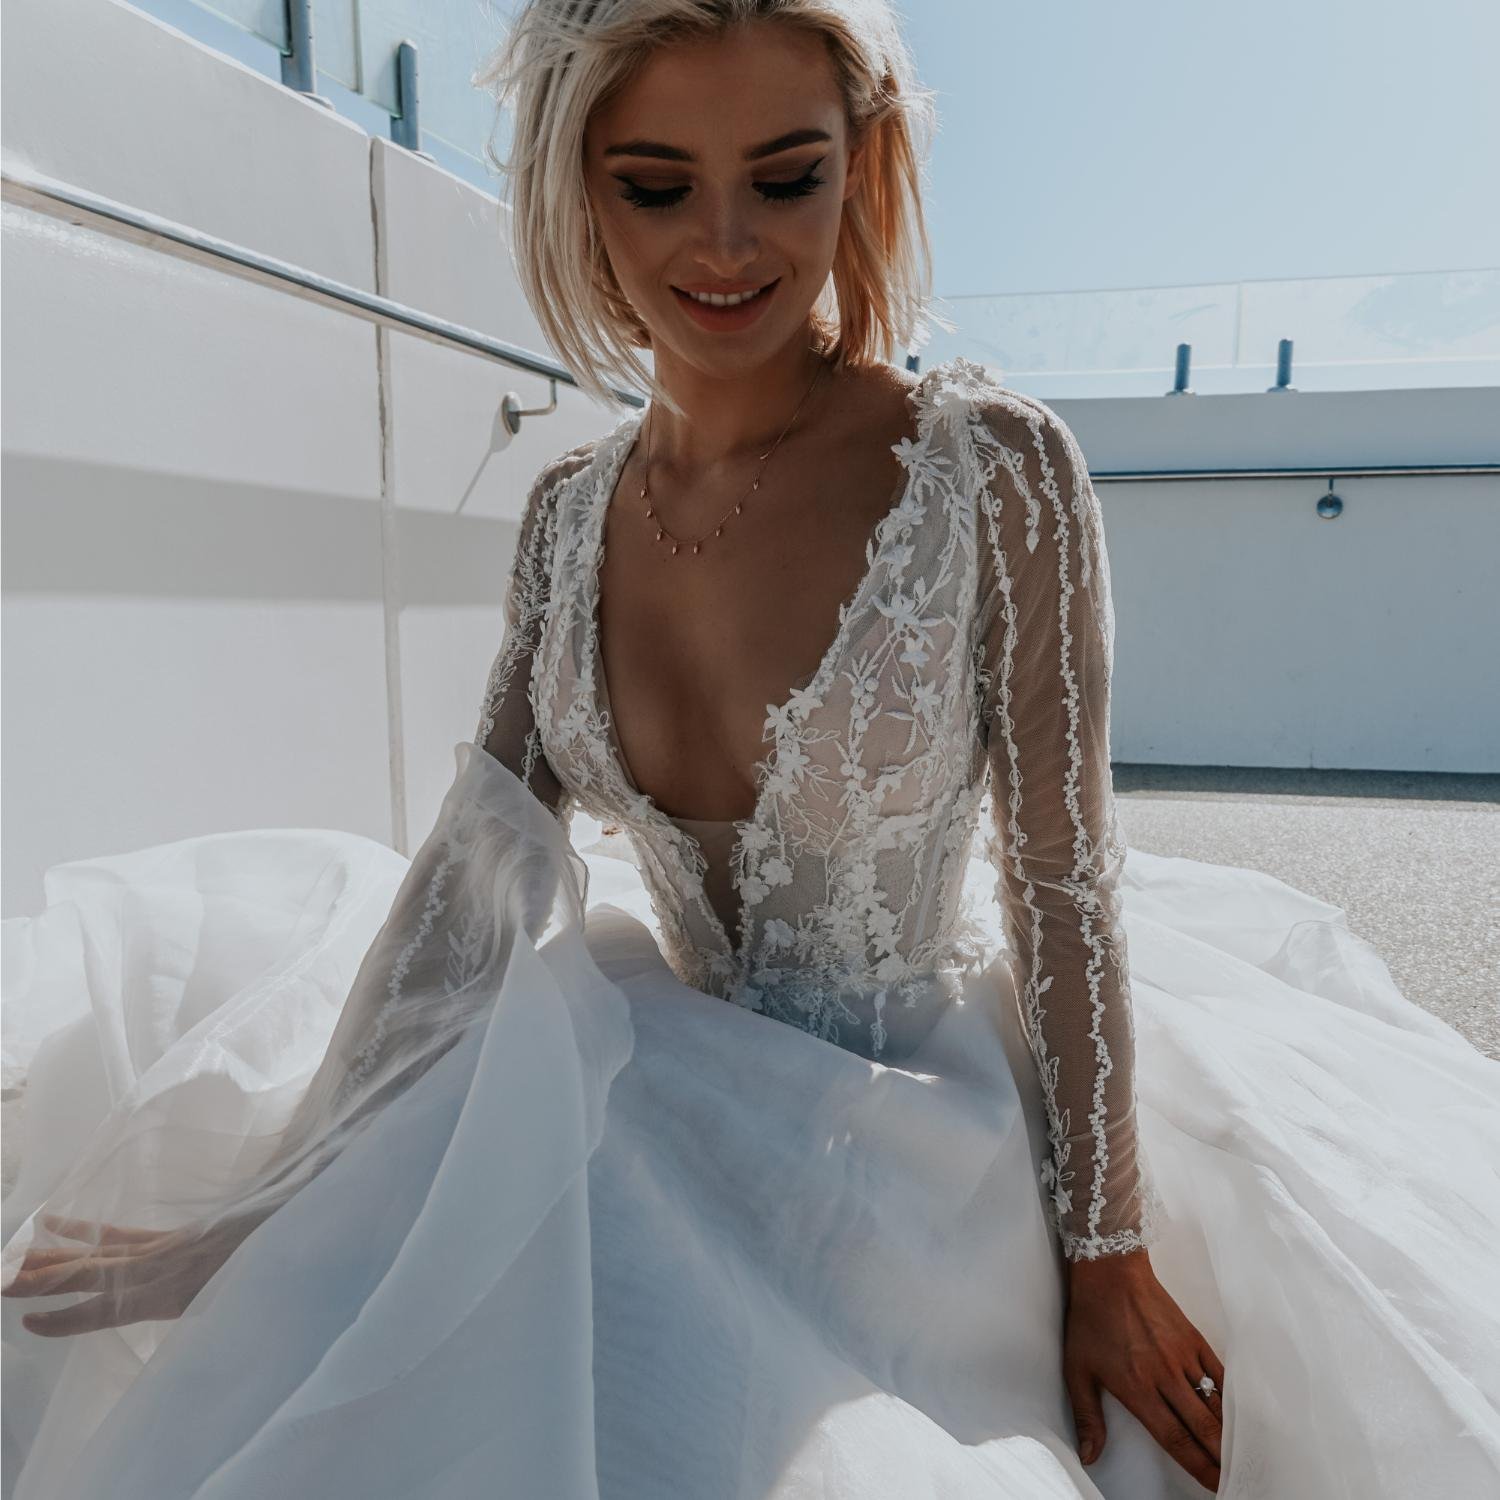 Daydream wedding dress by Rachel Rose Bridal 